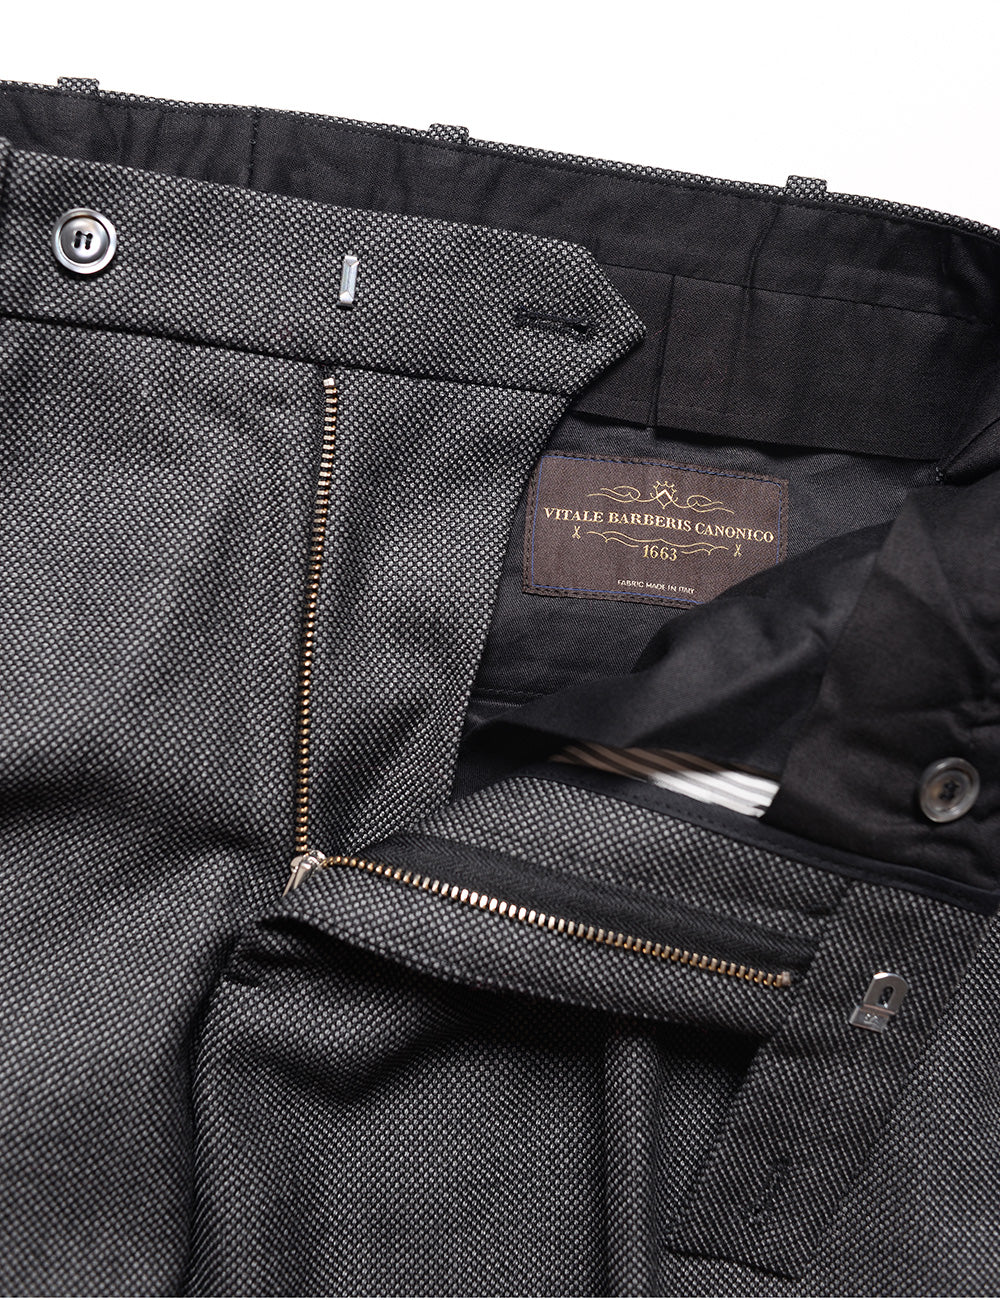 BROOKLYN TAILORS - BKT50 Tailored Trousers in Birdseye Weave - Storm Gray